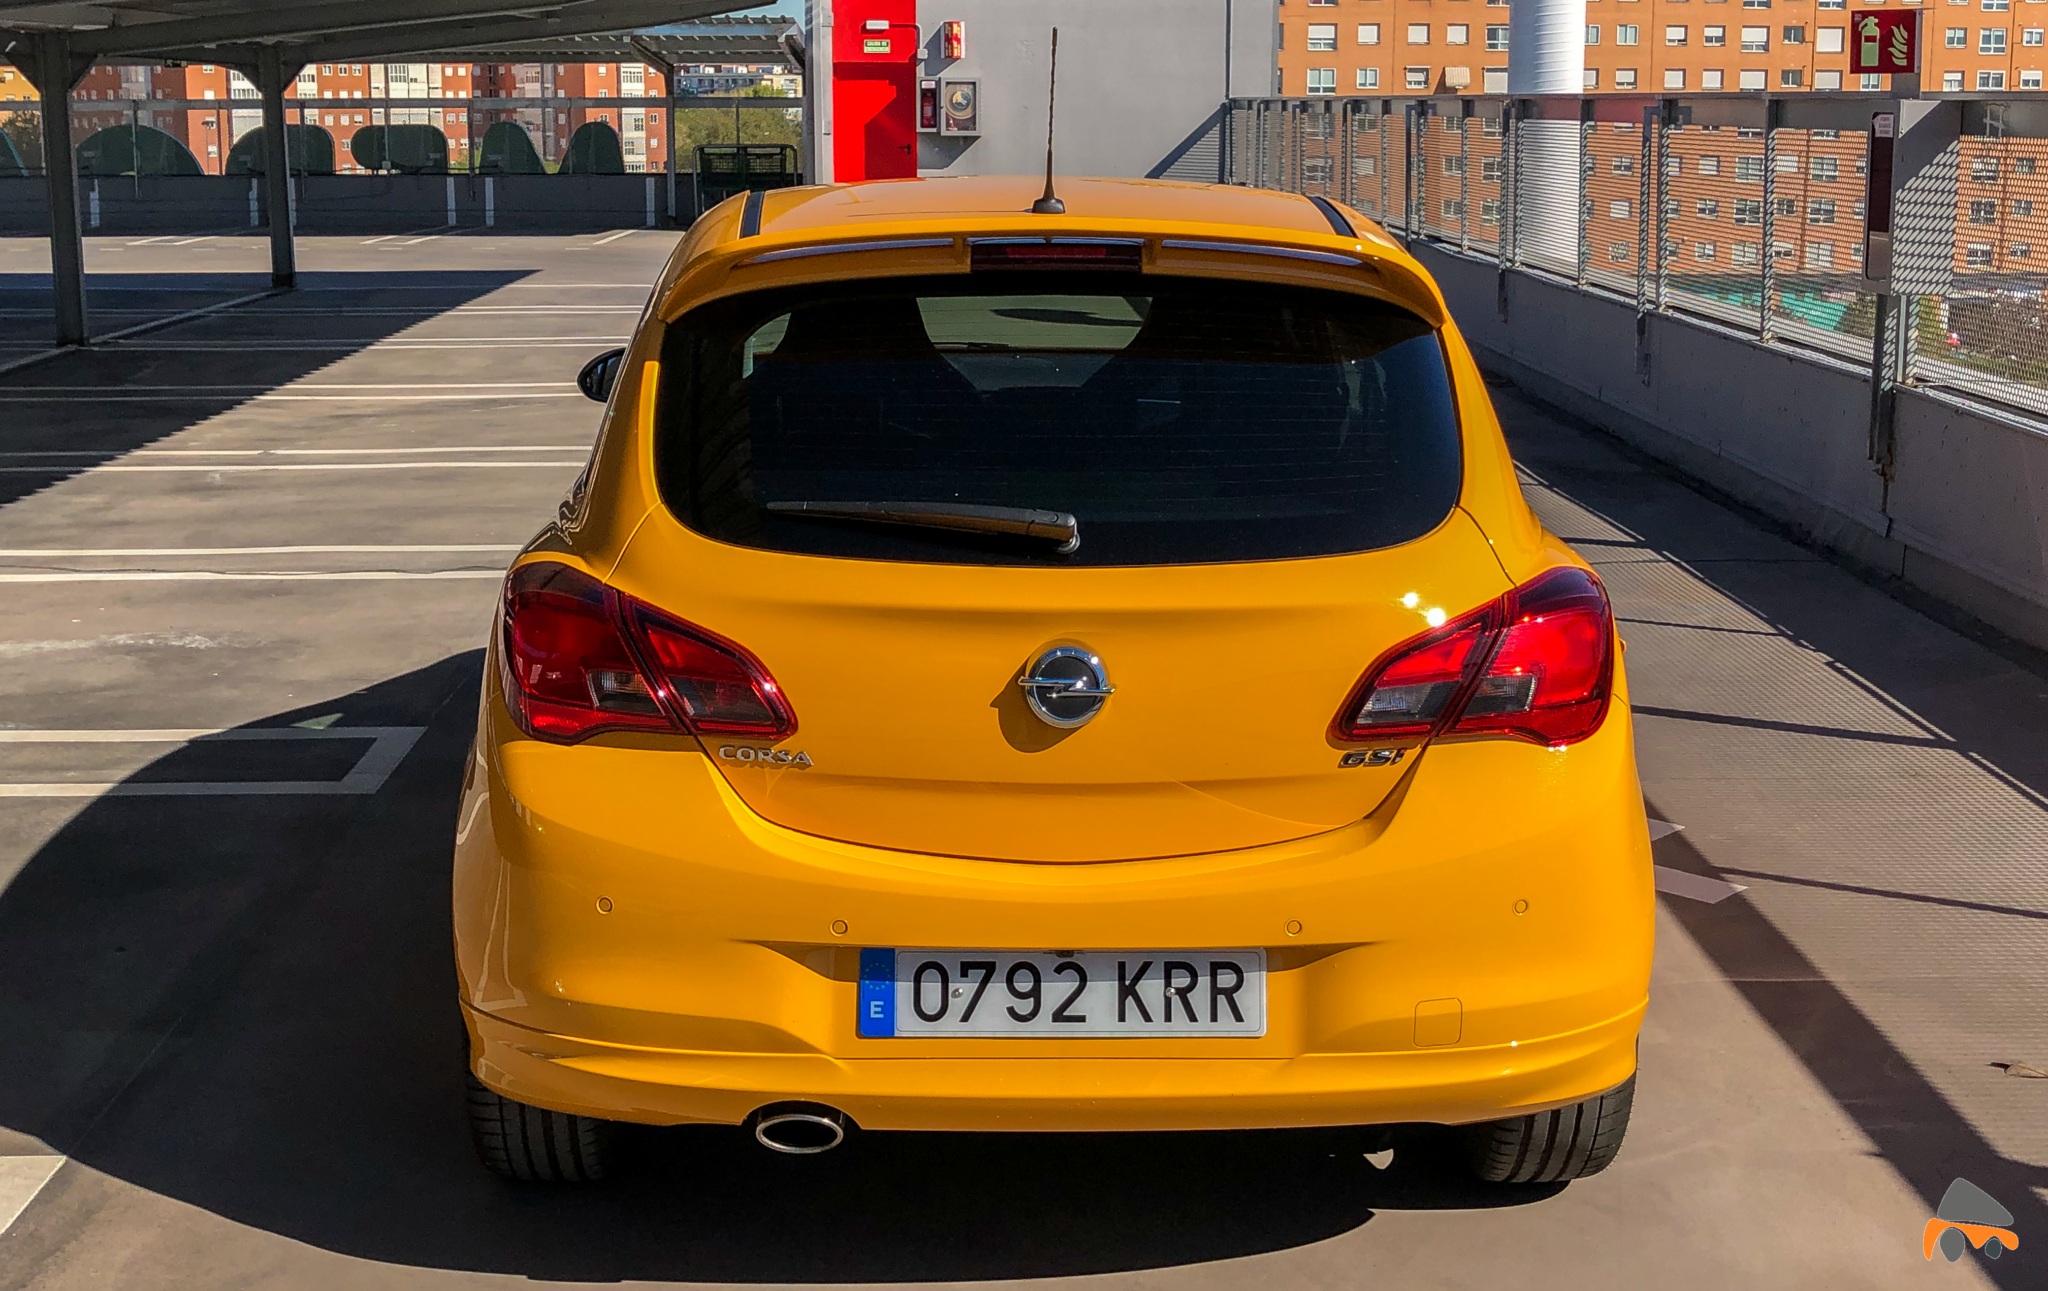 Trasera Opel Corsa GSI - Opel Corsa GSi: un juguete para pasarlo bien